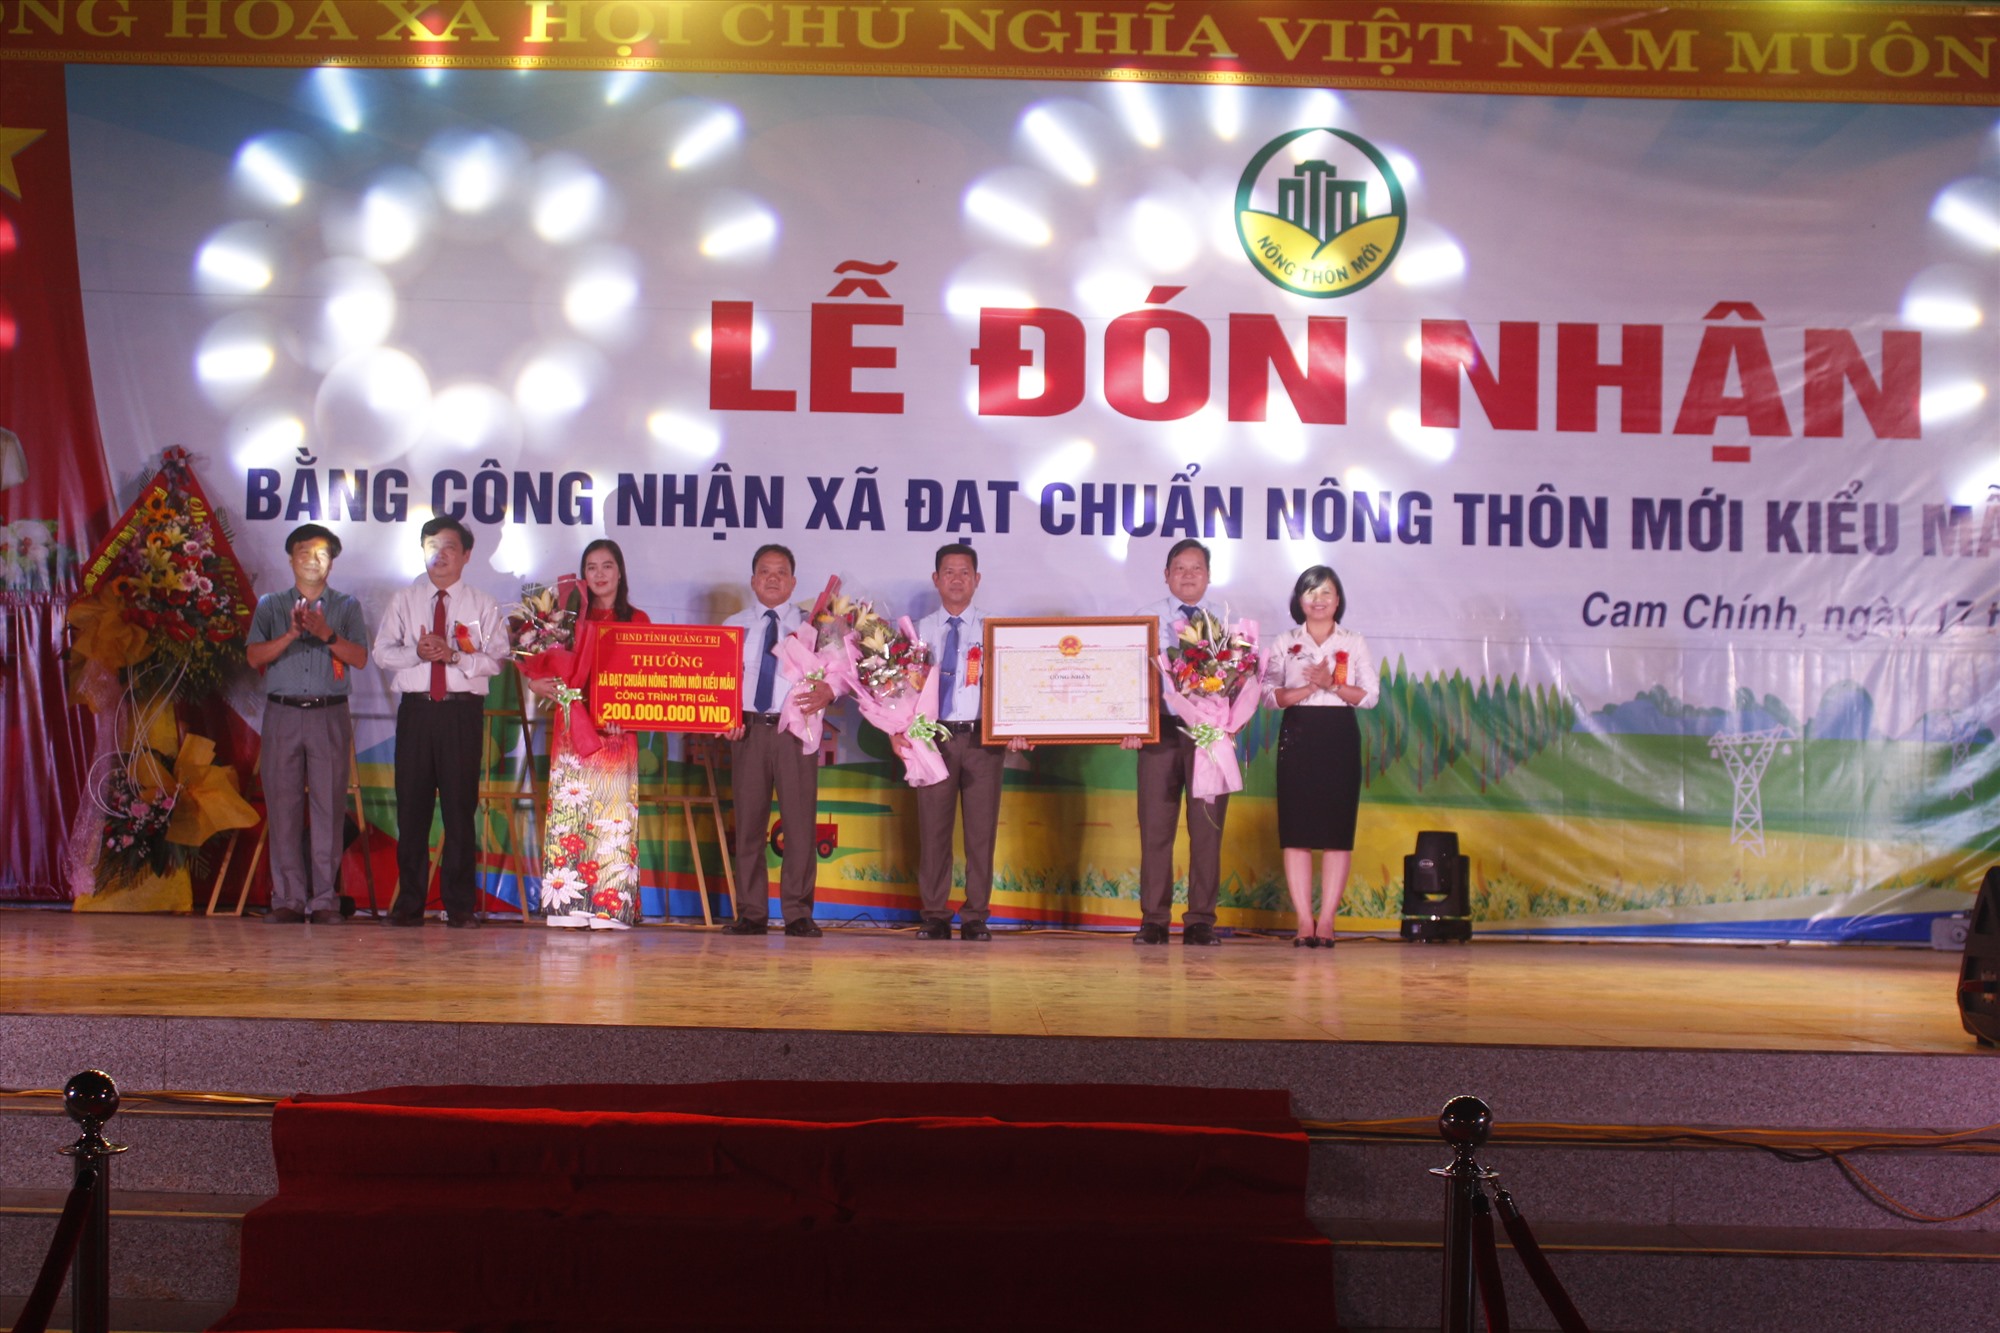 Lãnh đạo Sở NN&PTNT và huyện Cam Lộ trao Bằng công nhận xã đạt chuẩn NTM kiểu mẫu cho xã Cam Chính, huyện Cam Lộ